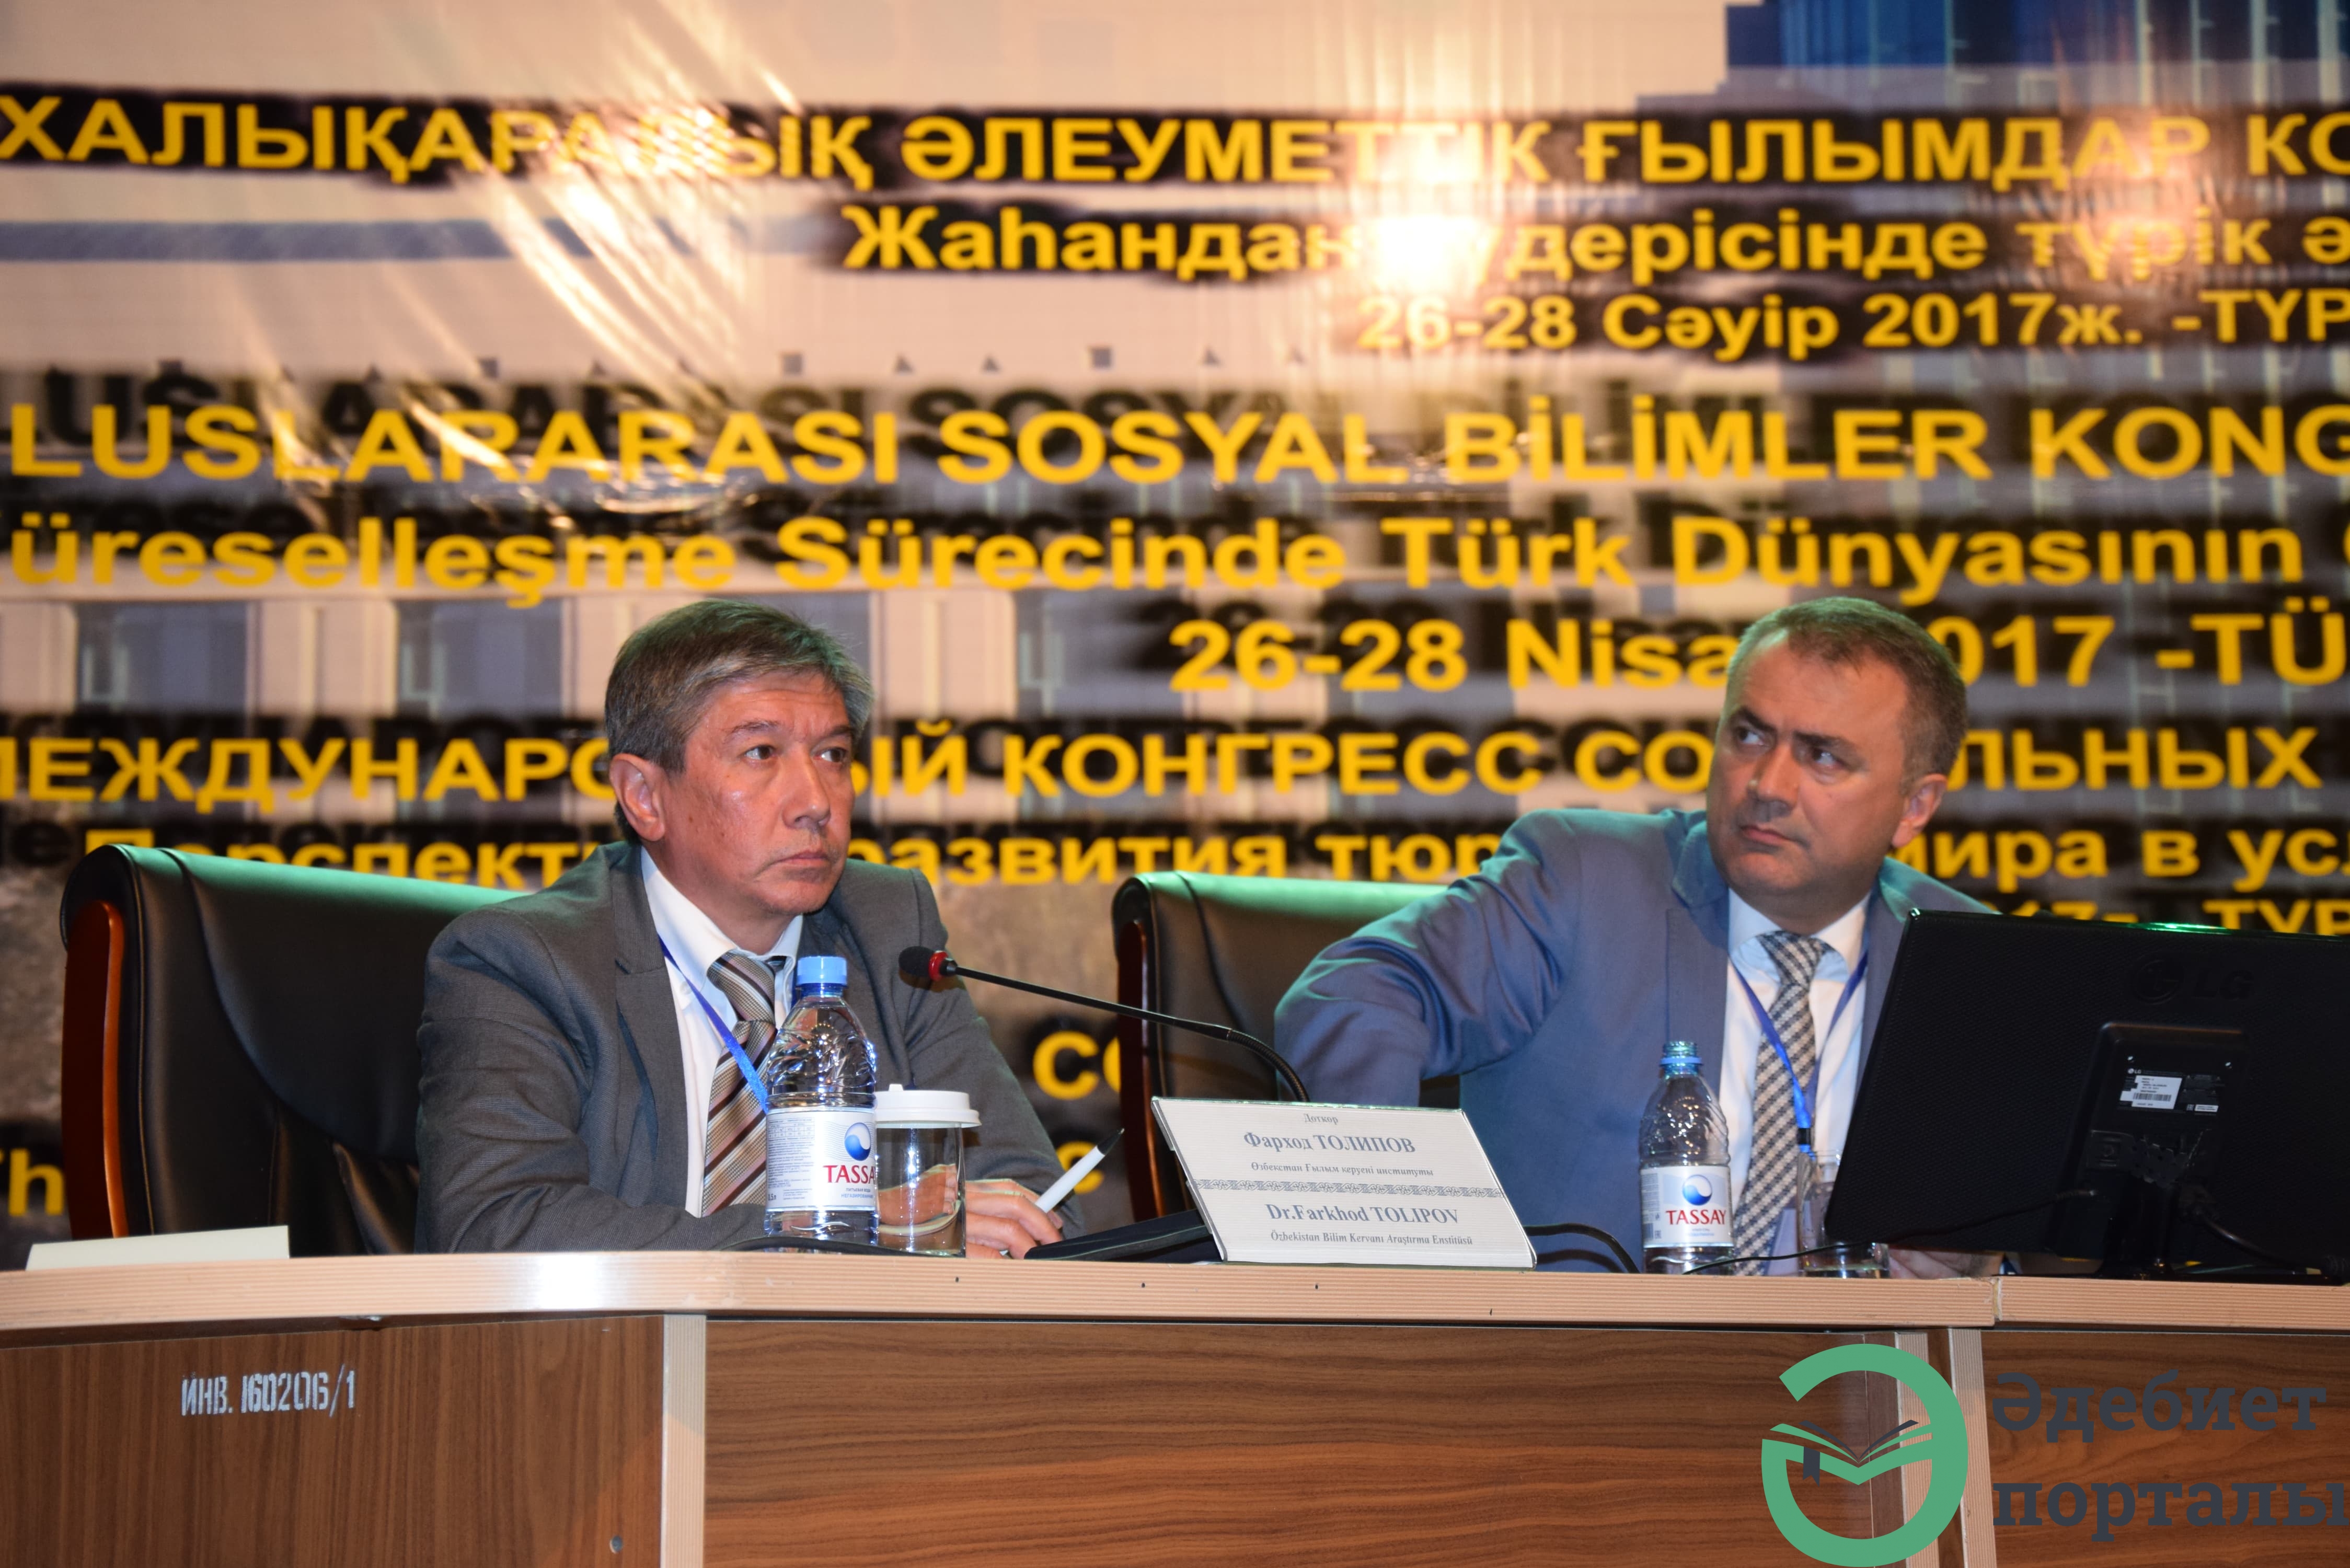 Халықаралық әлеуметтік ғылымдар конгресі: ІІІ Түркістан форумы  - фото 63 - adebiportal.kz